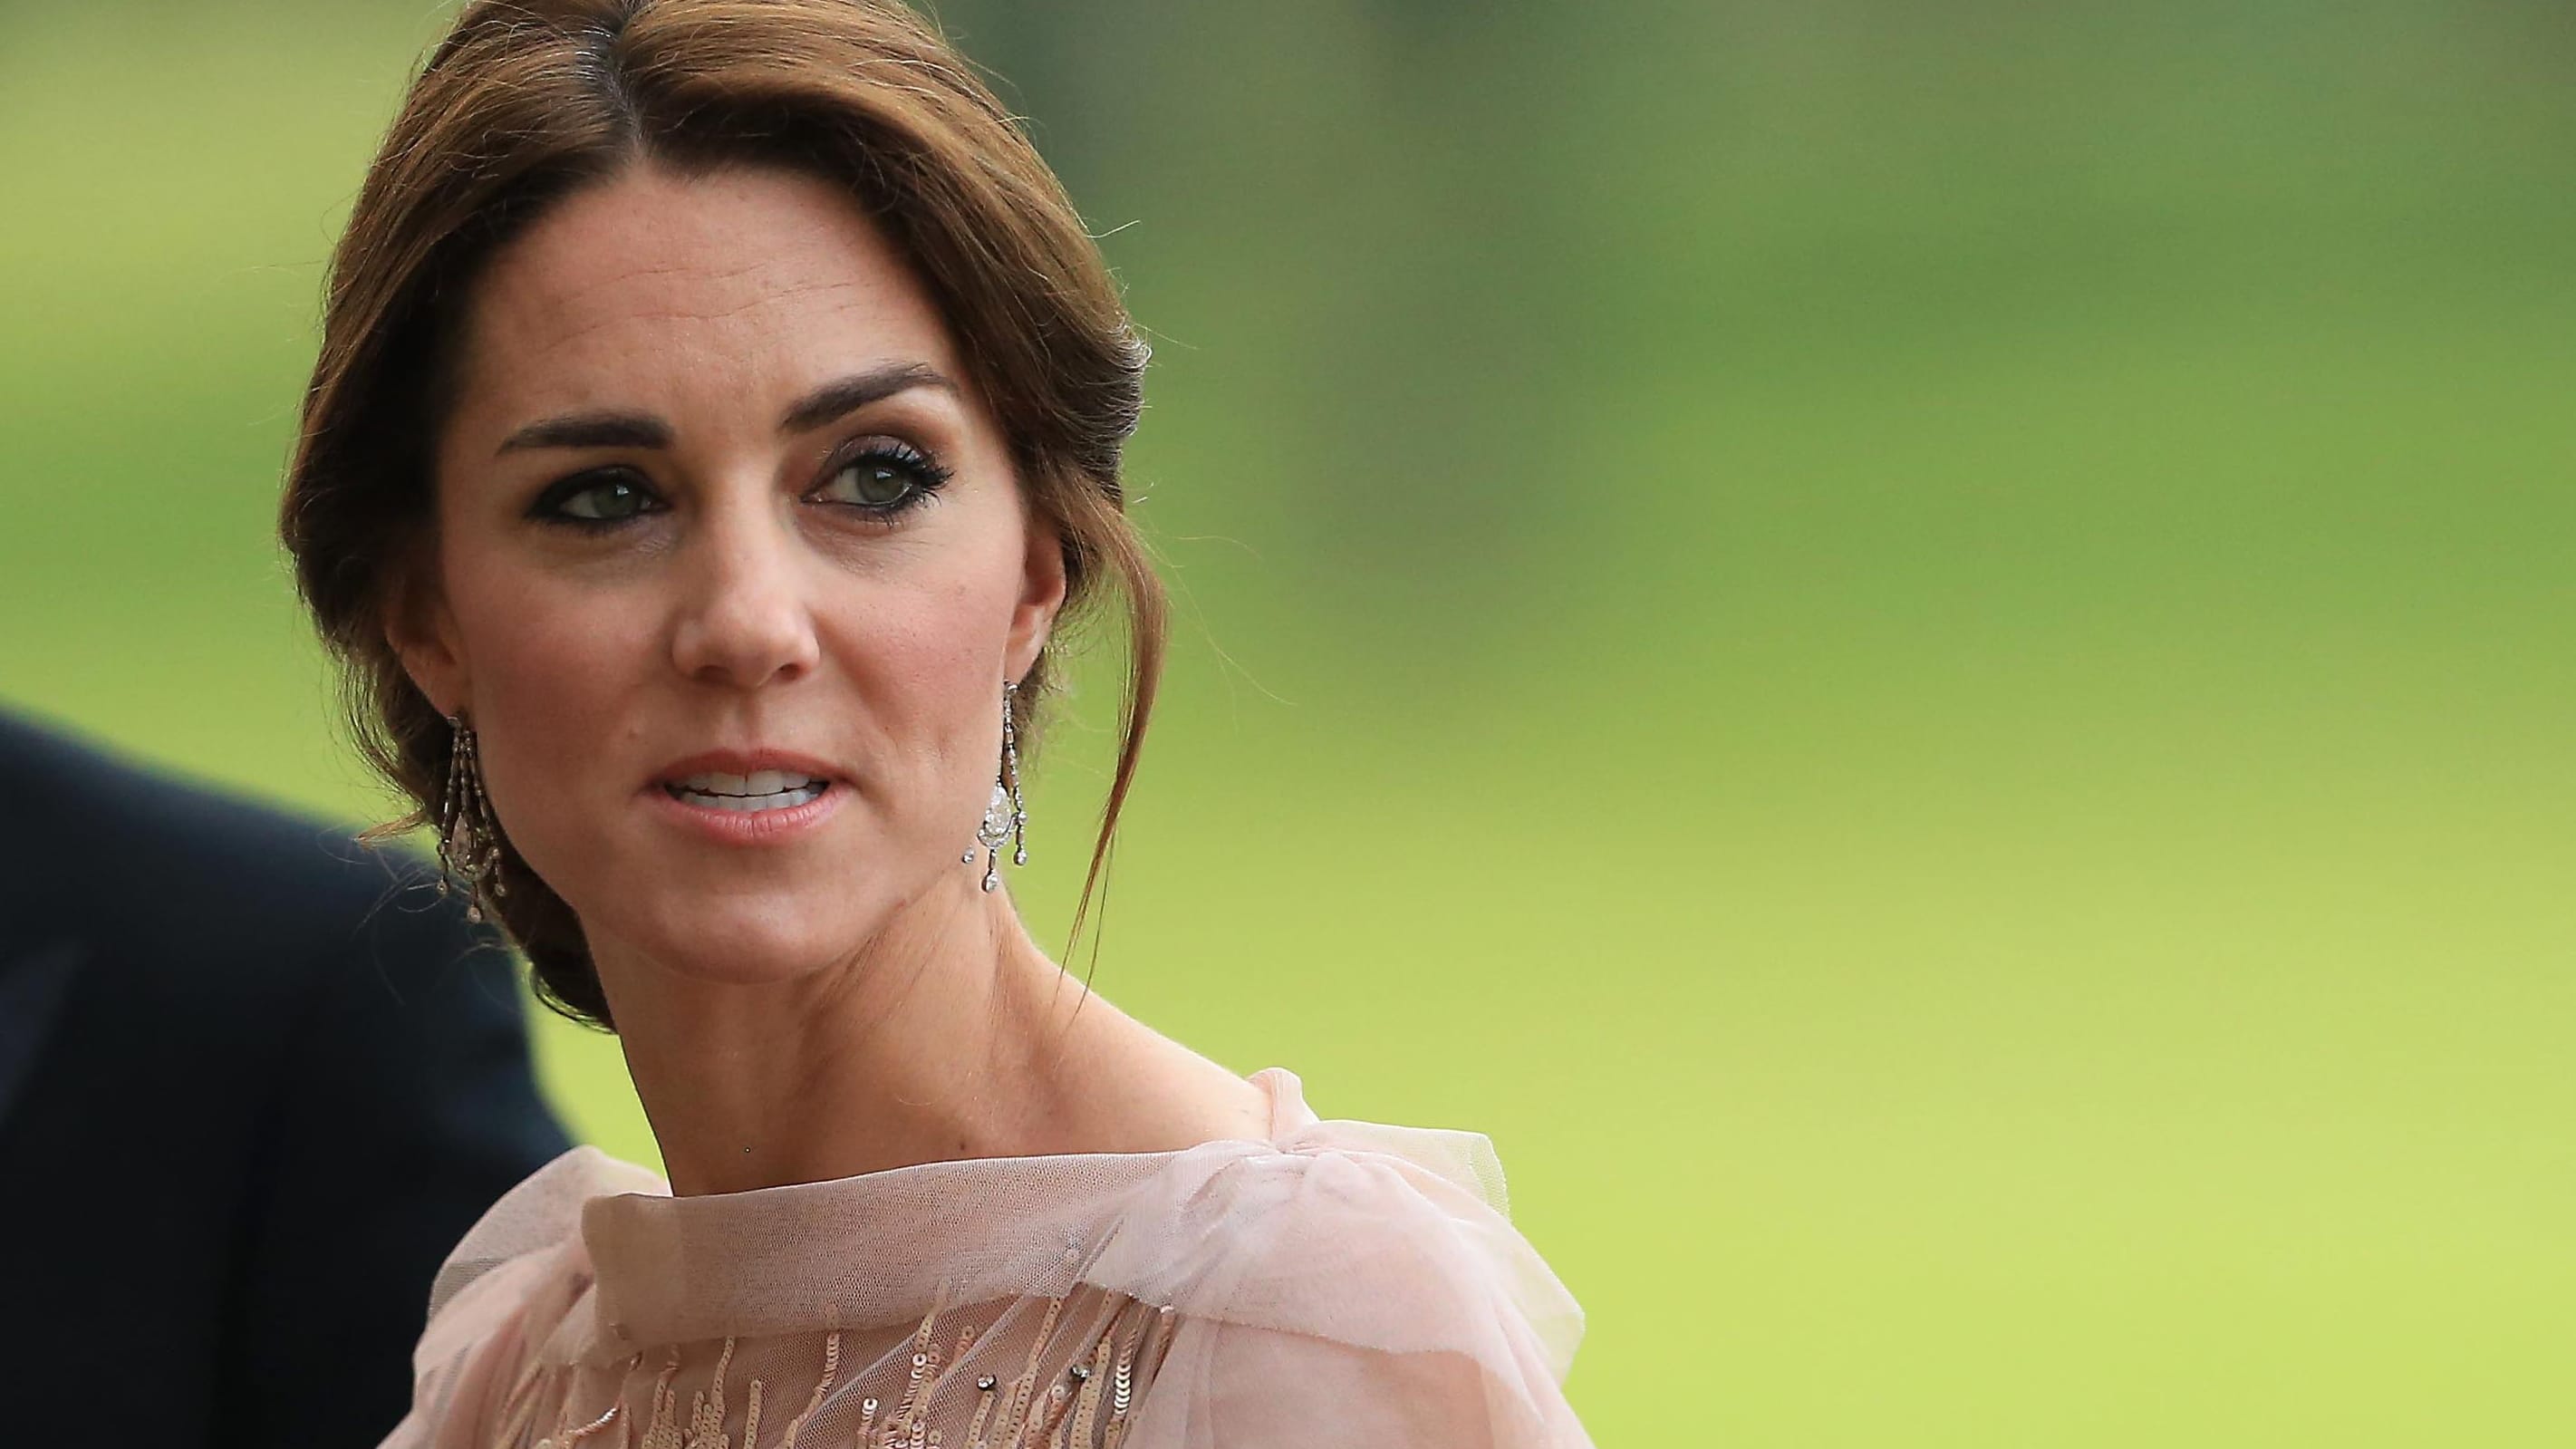 Prinzessin Kate: Agenturen ziehen Foto zurück – wegen Manipulationsverdacht